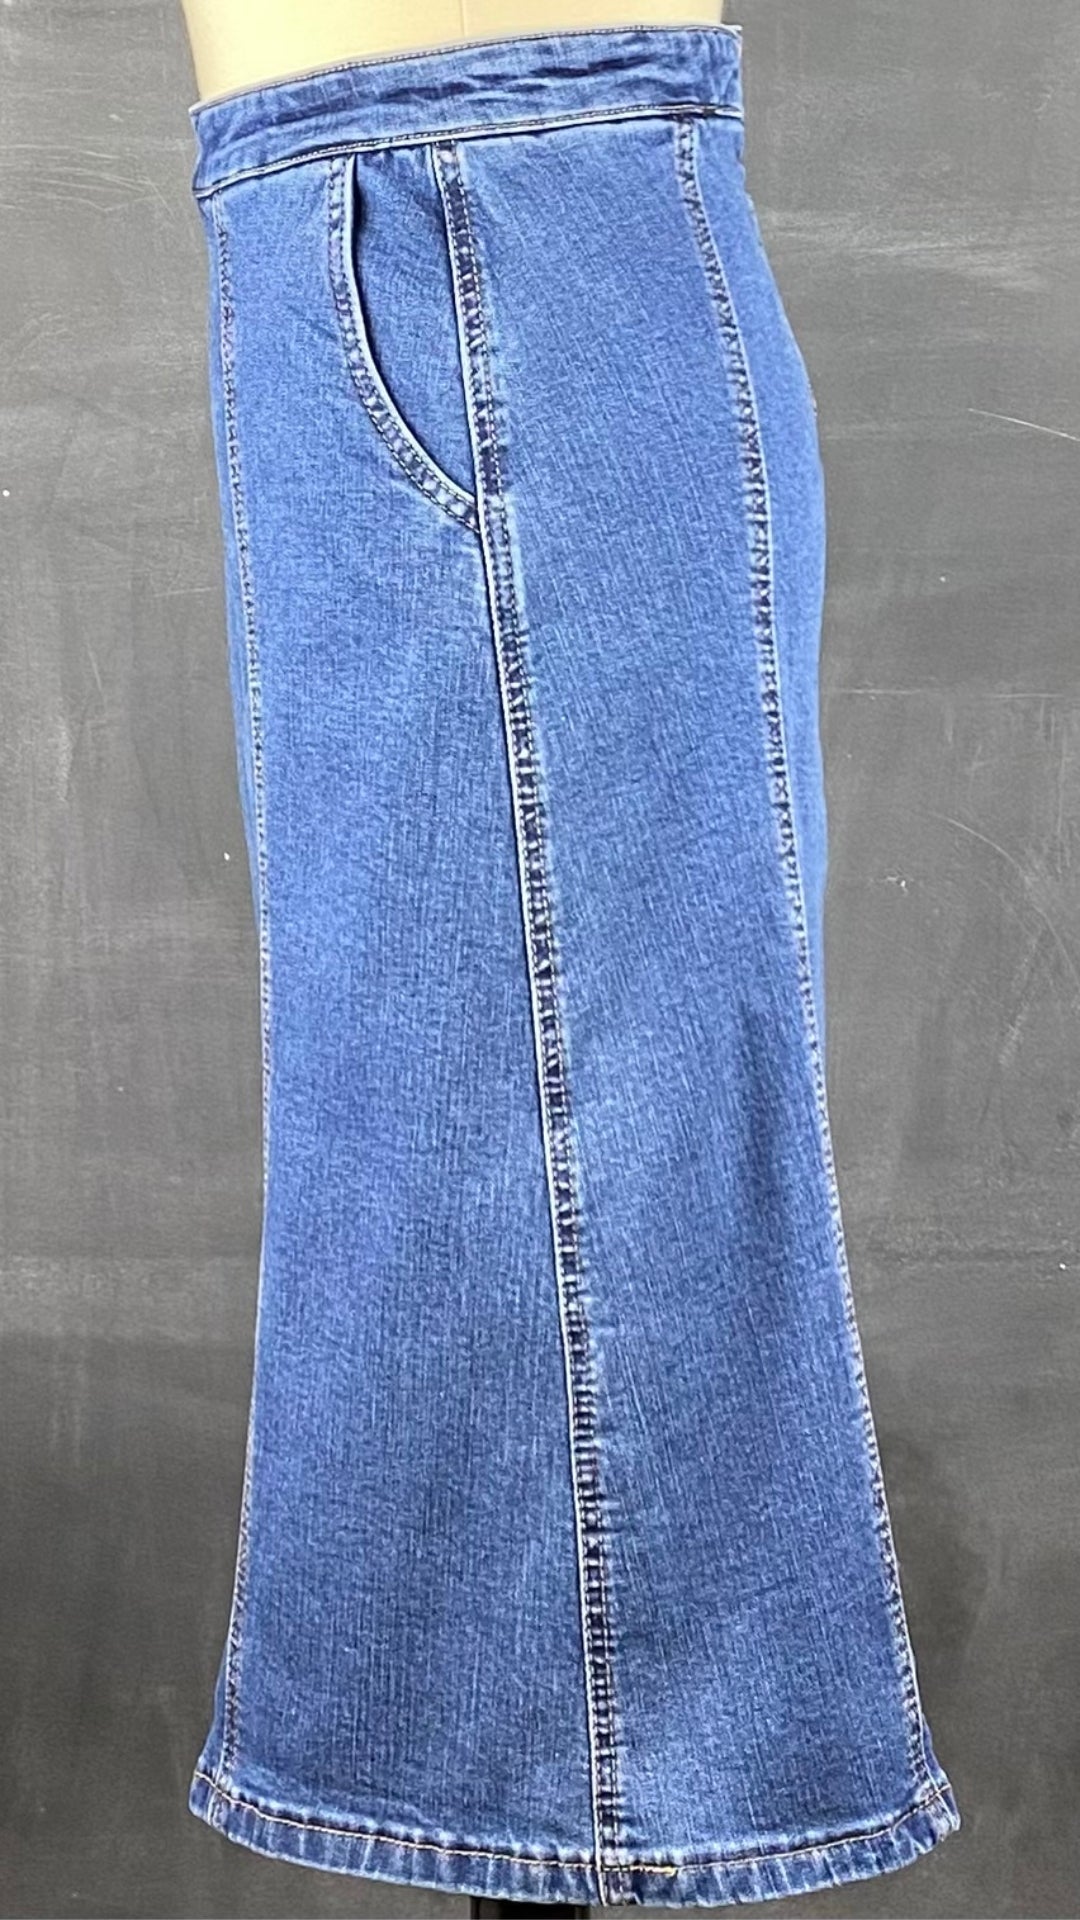 Jupe seconde main en jeans ligne A. Marque Icône par Simons, taille small. Vue de côté.